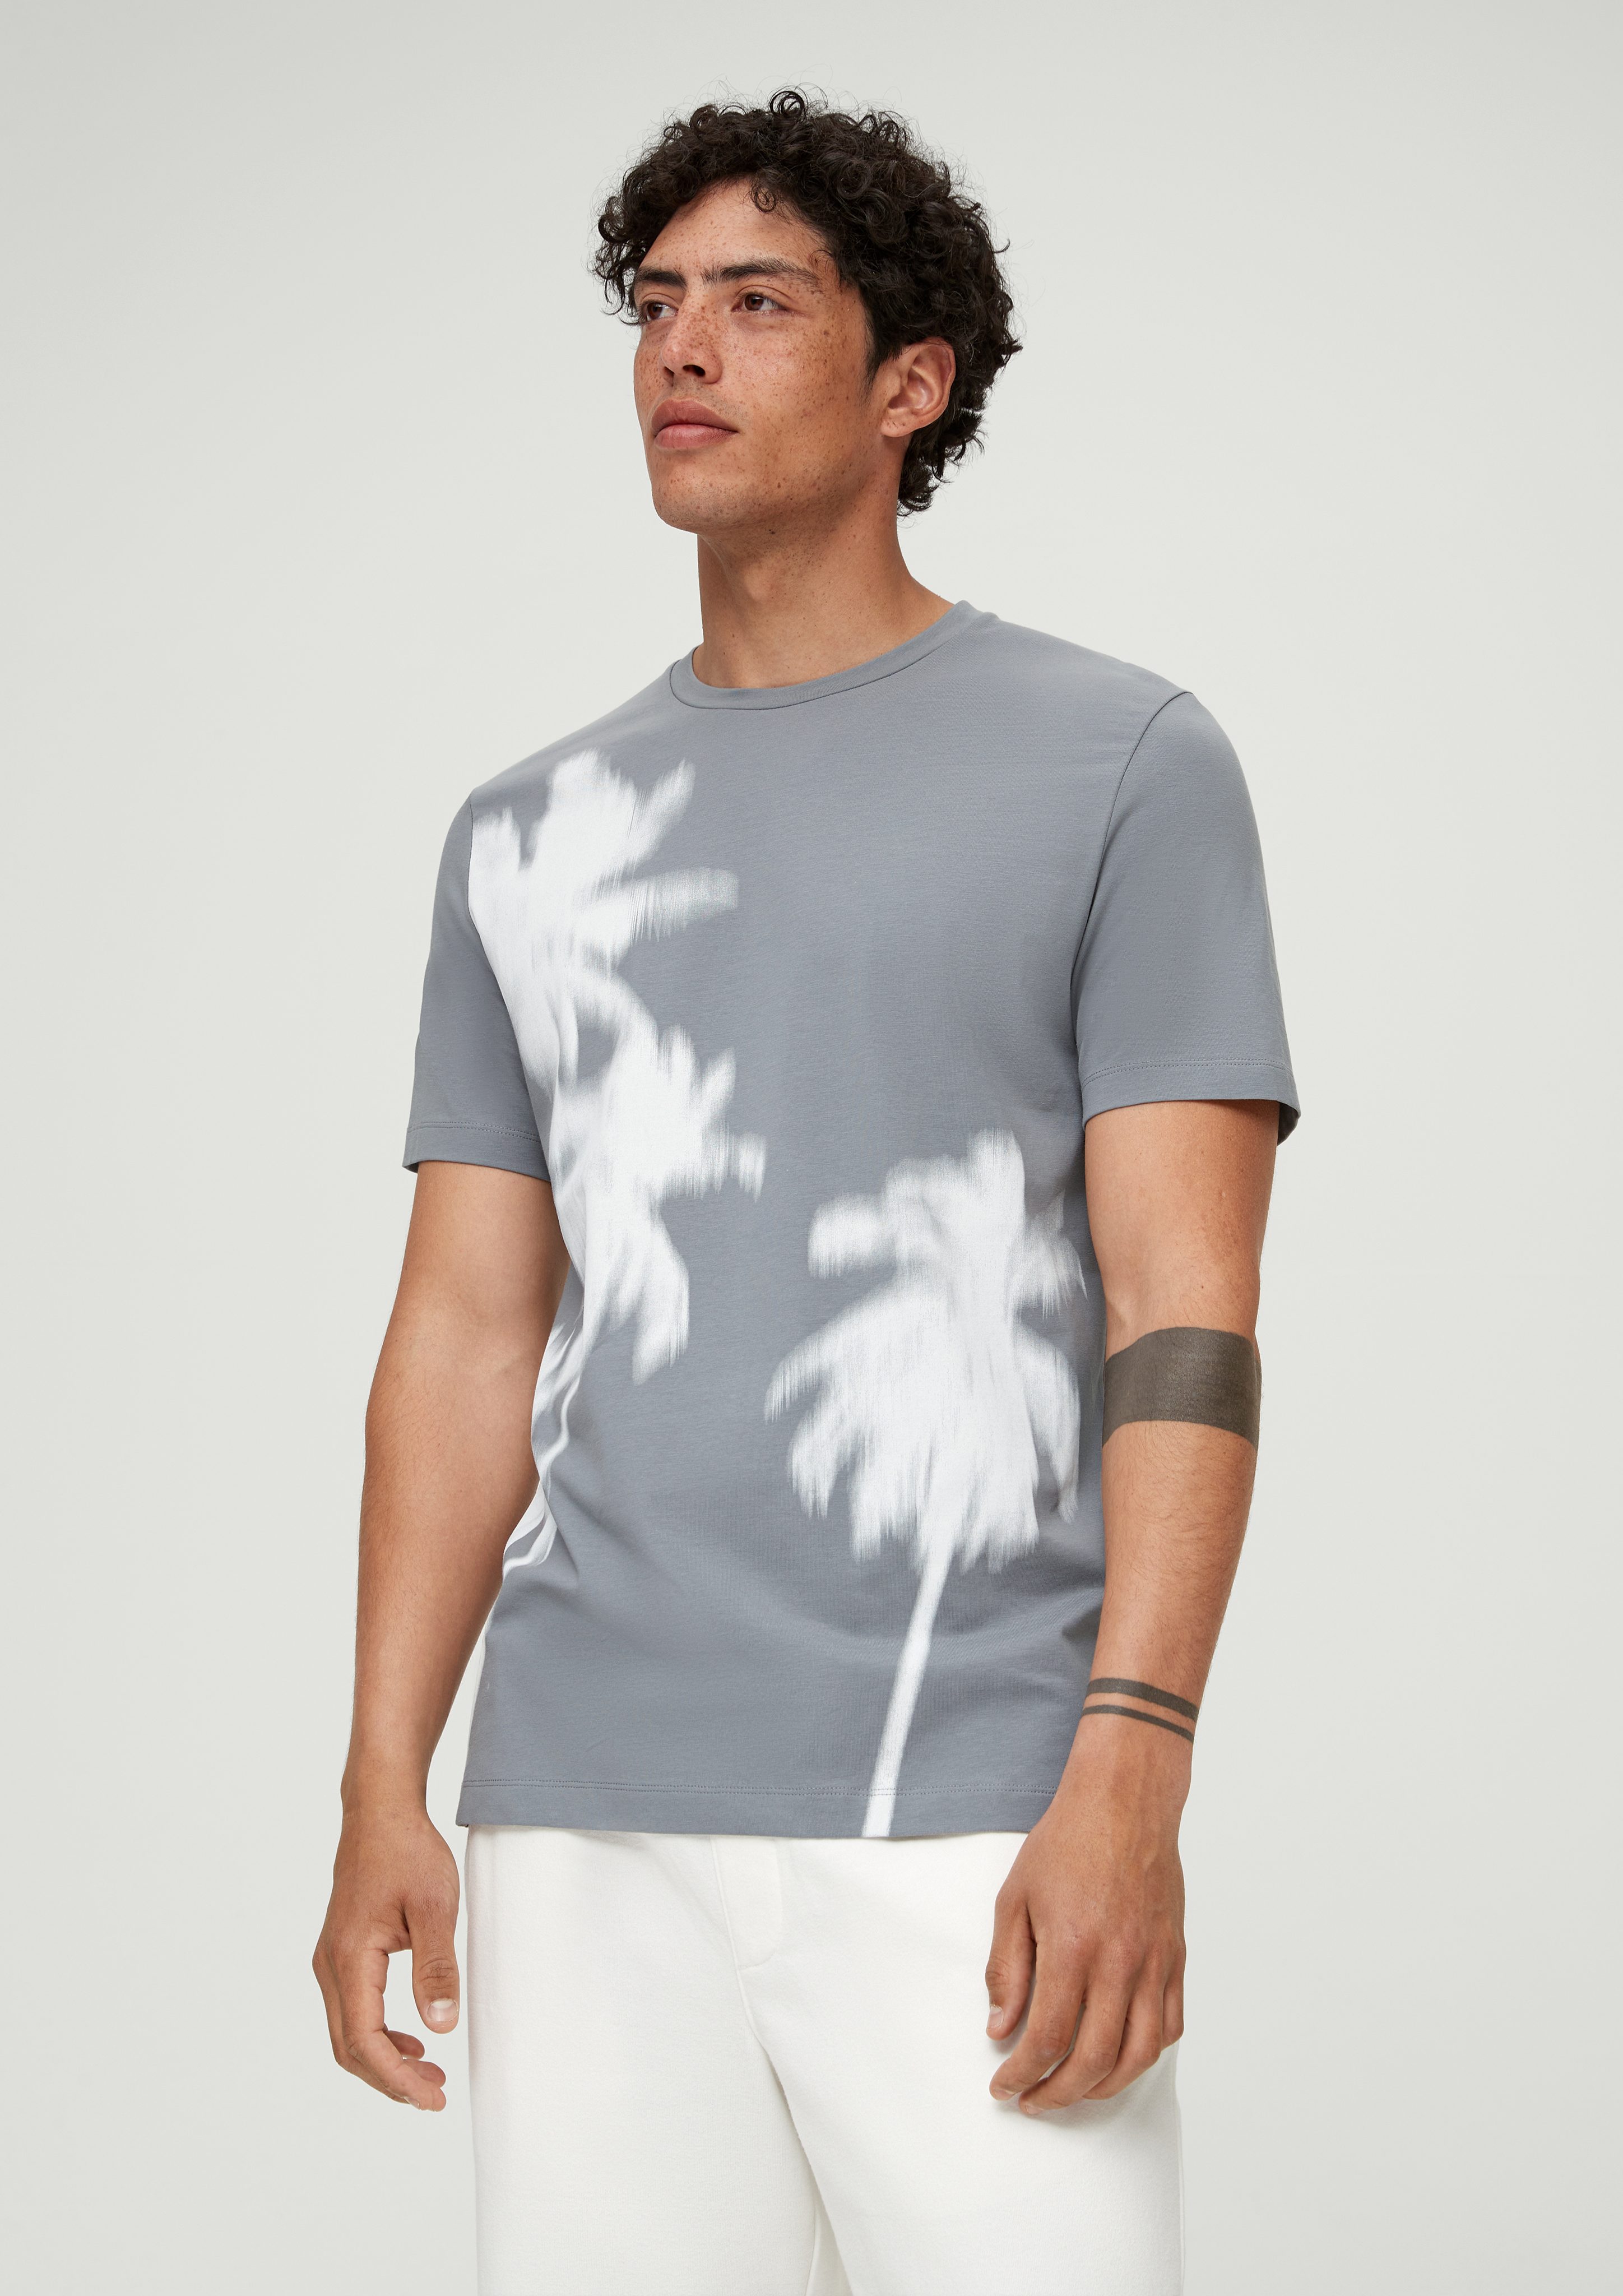 s.Oliver Kurzarmshirt T-Shirt mit Grafikprint Artwork grau